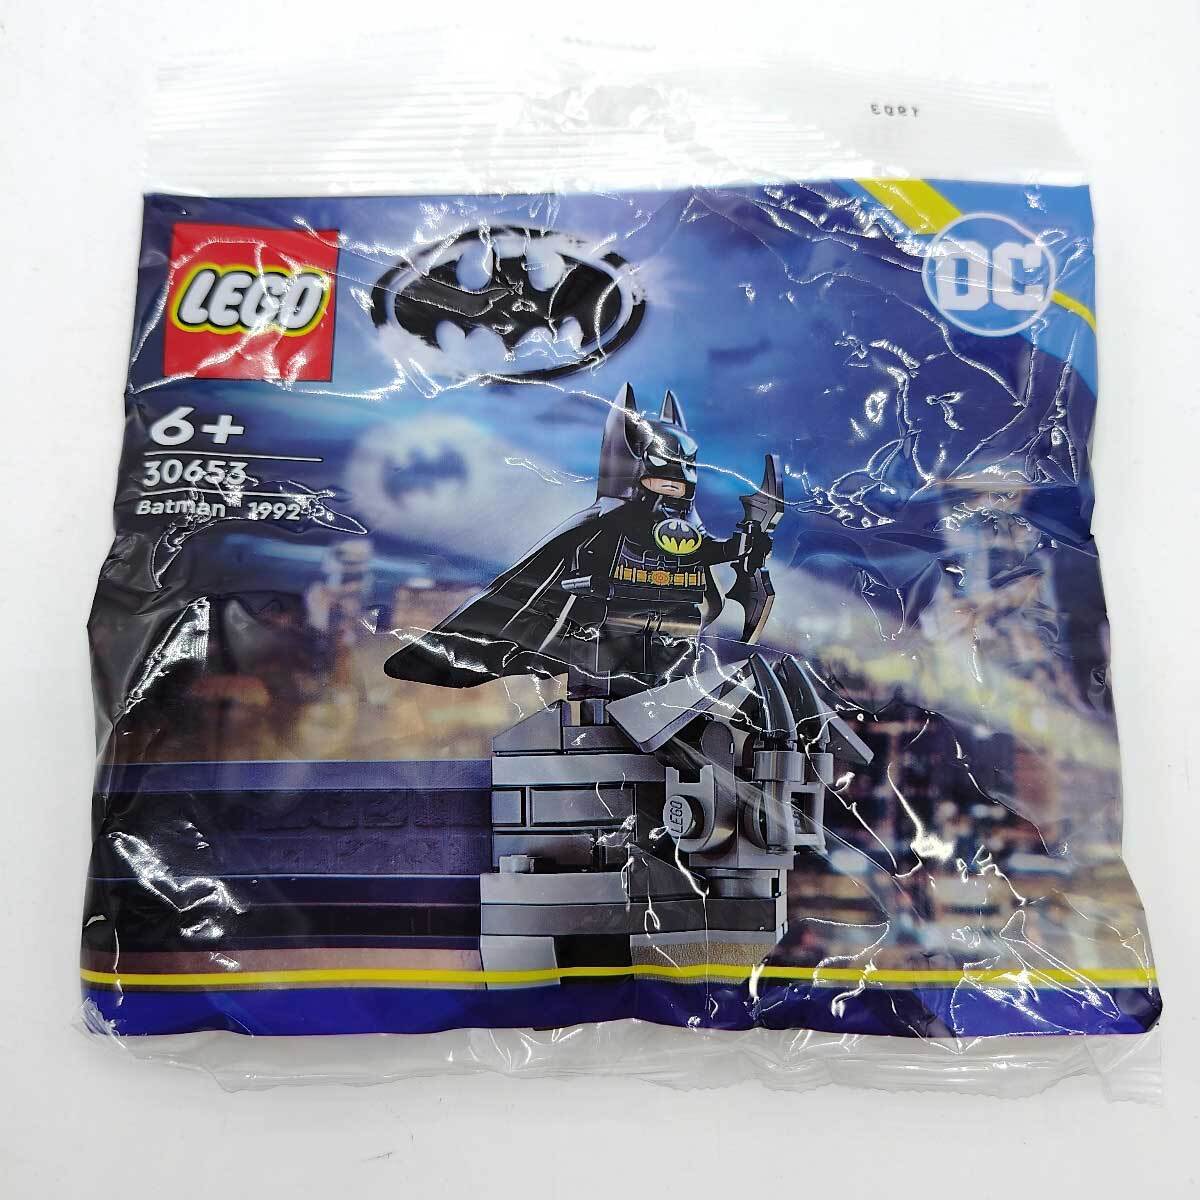 【中古・未使用品】レゴ DC バットマン ポリバッグ ミニセット ミニフィグ 30653 LEGOの画像1